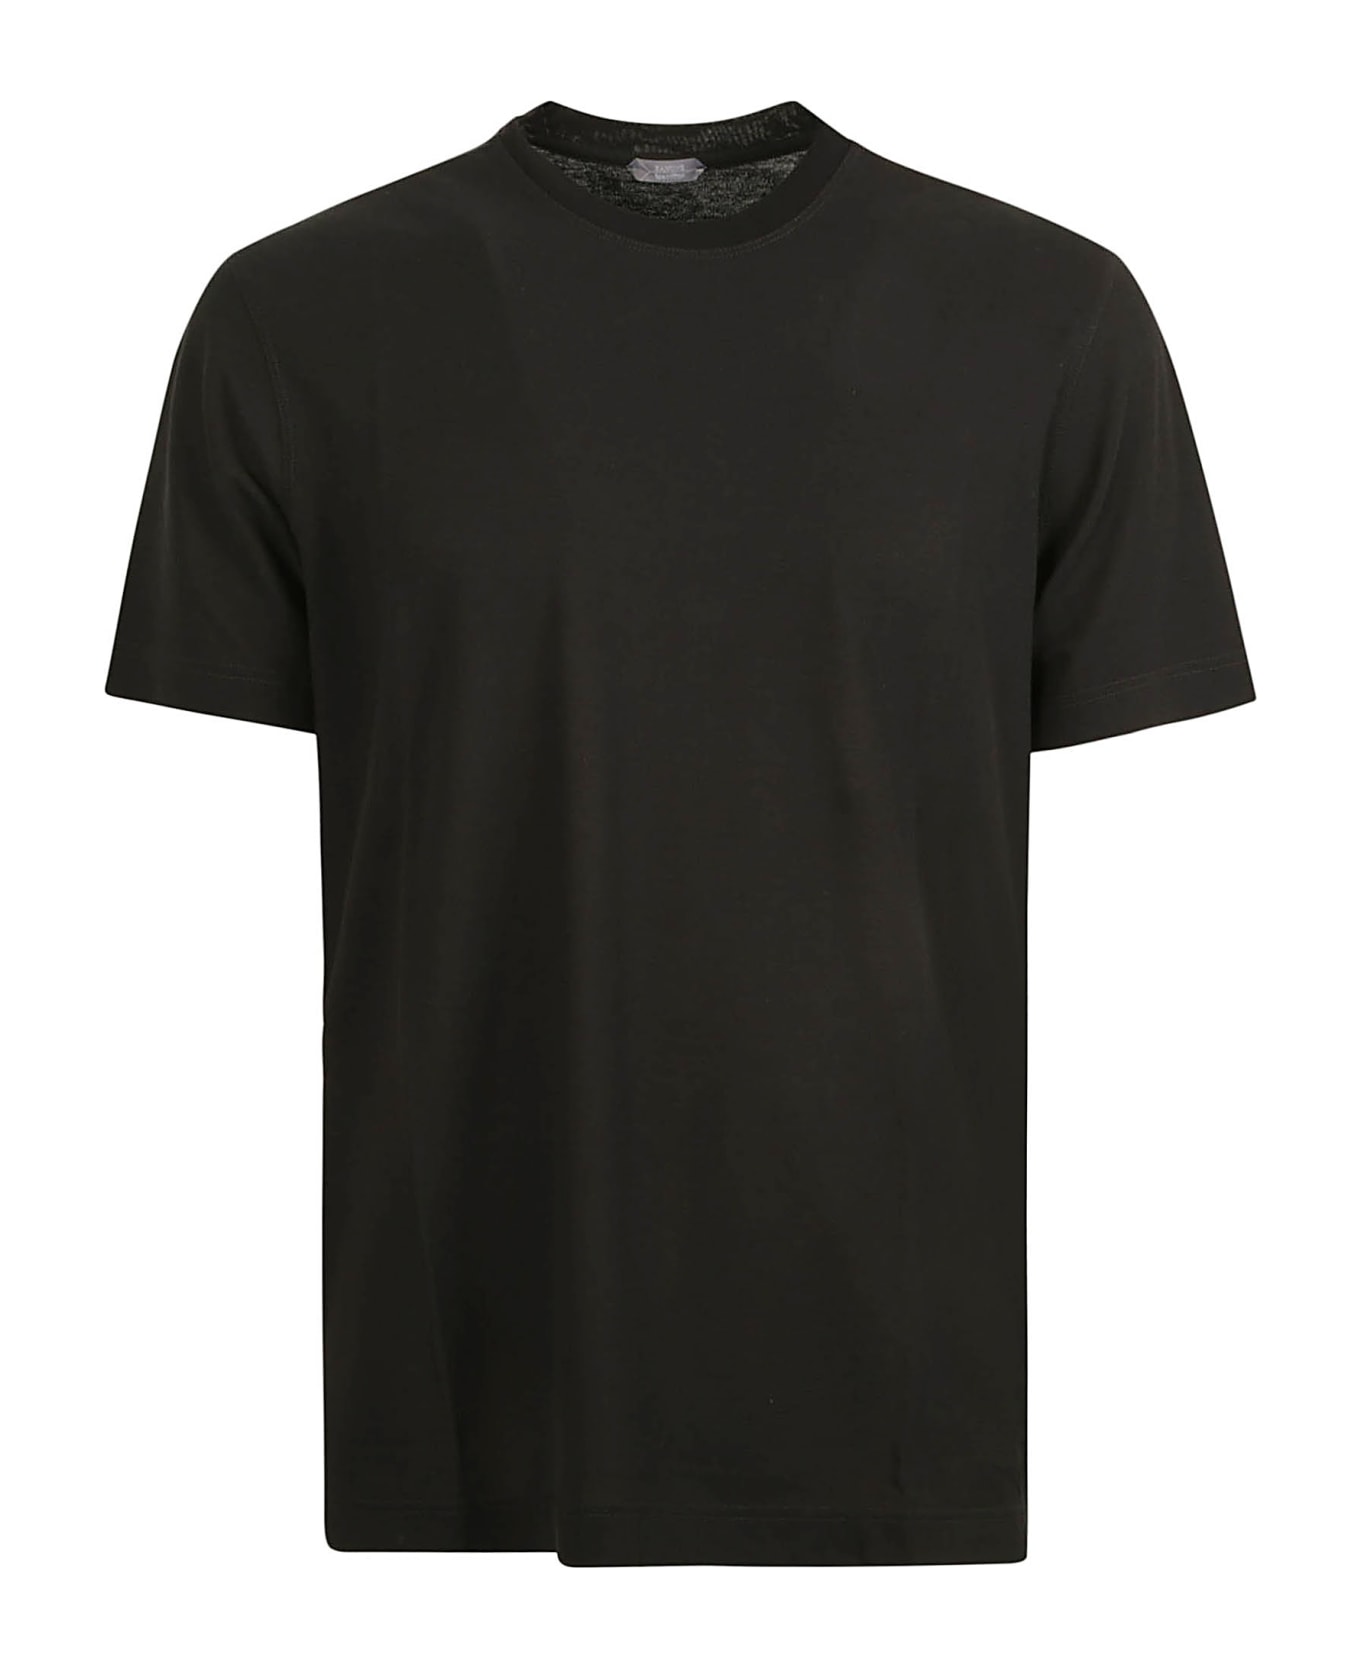 Zanone Round Neck Plain T-shirt - Black シャツ